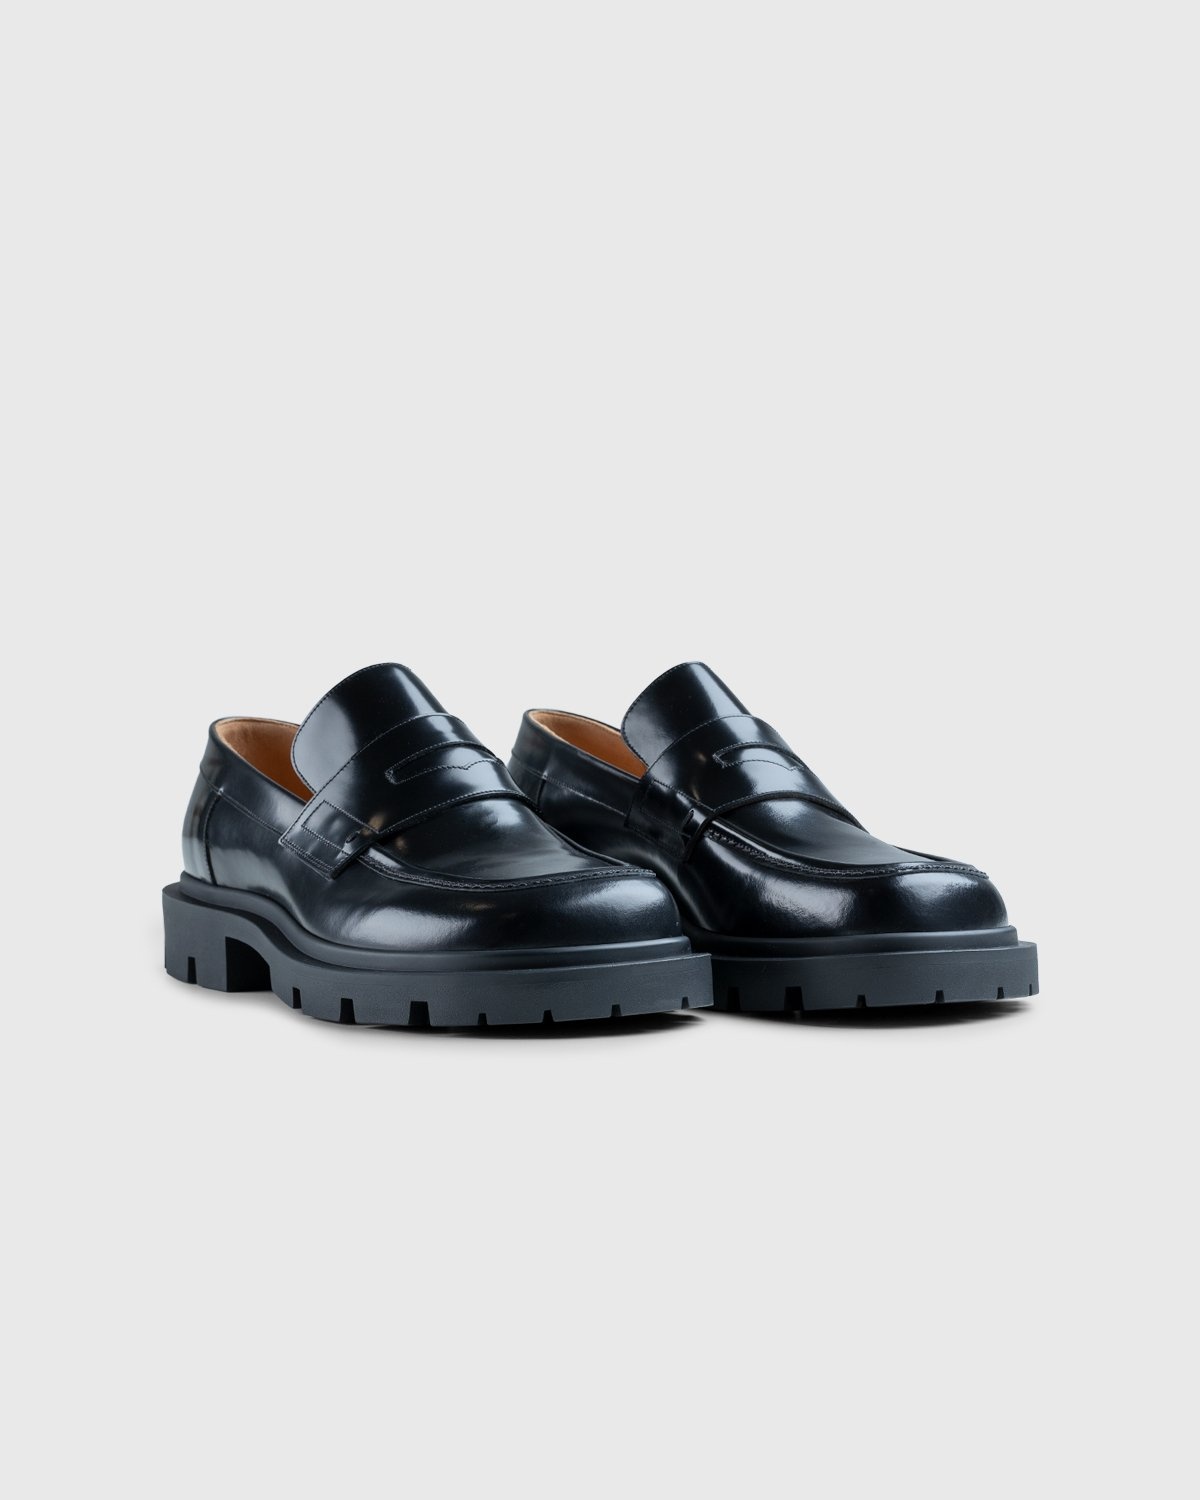 Maison Margiela – Leather Loafers Black - Shoes - Black - Image 2